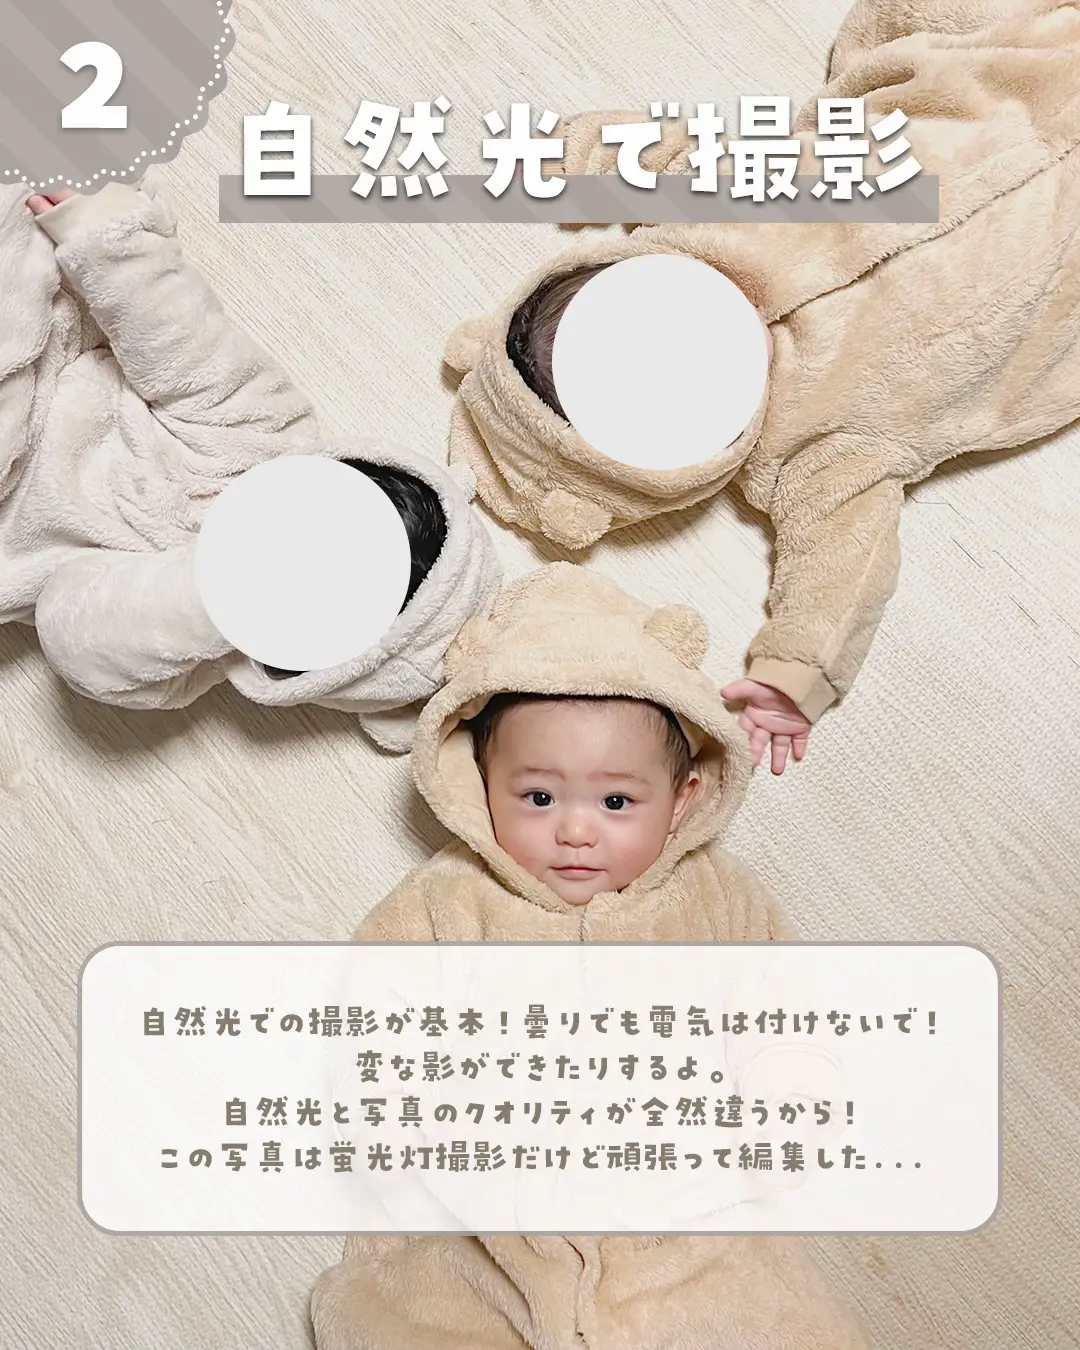 inujirushi.official ←プレママ・産後ママ向けお役立ち情報をチェック